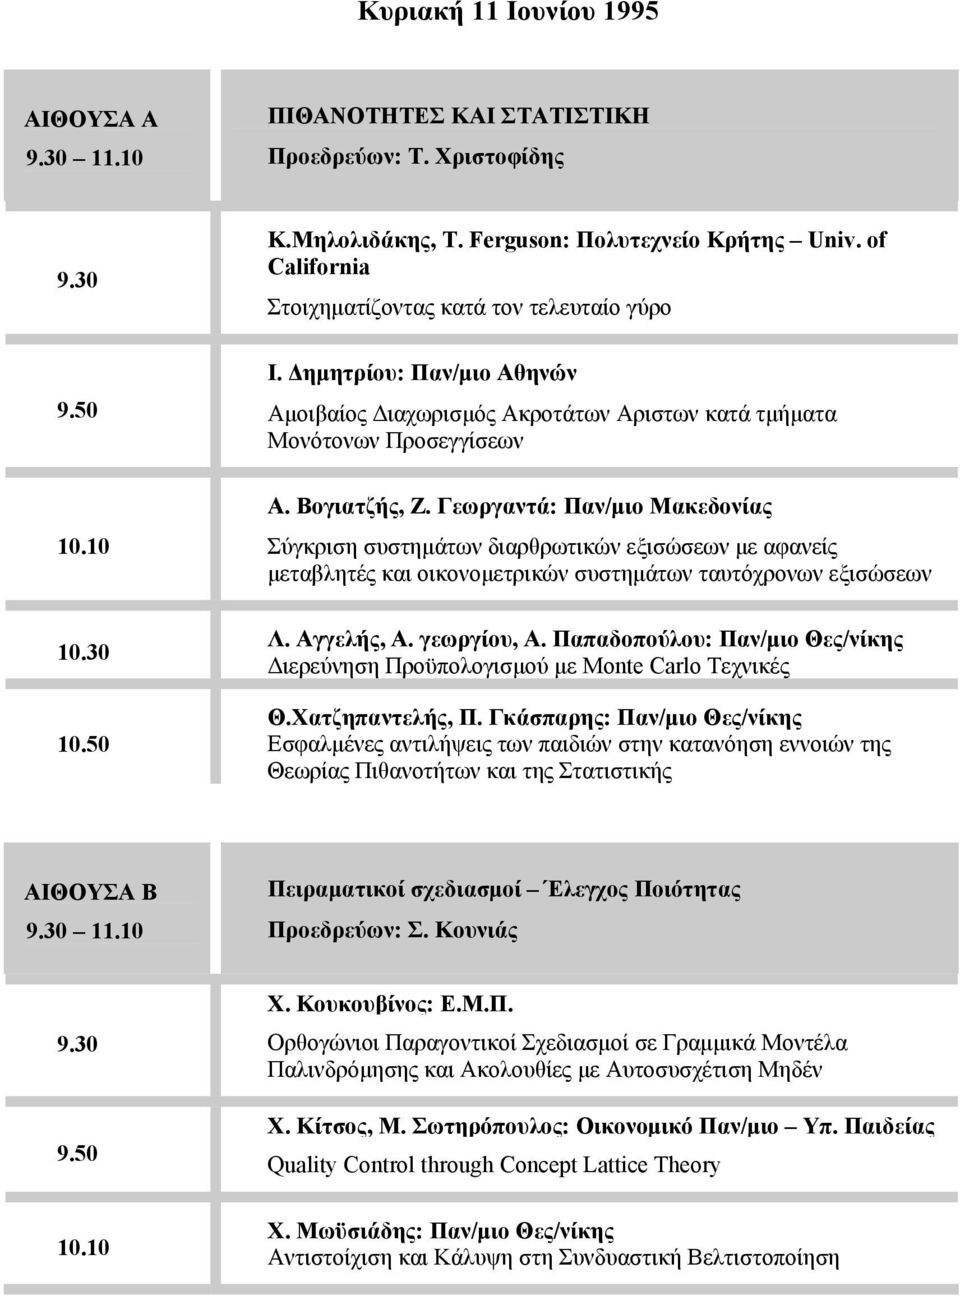 Γεωργαντά: Παν/μιο Μακεδονίας Σύγκριση συστημάτων διαρθρωτικών εξισώσεων με αφανείς μεταβλητές και οικονομετρικών συστημάτων ταυτόχρονων εξισώσεων Λ. Αγγελής, Α. γεωργίου, Α.